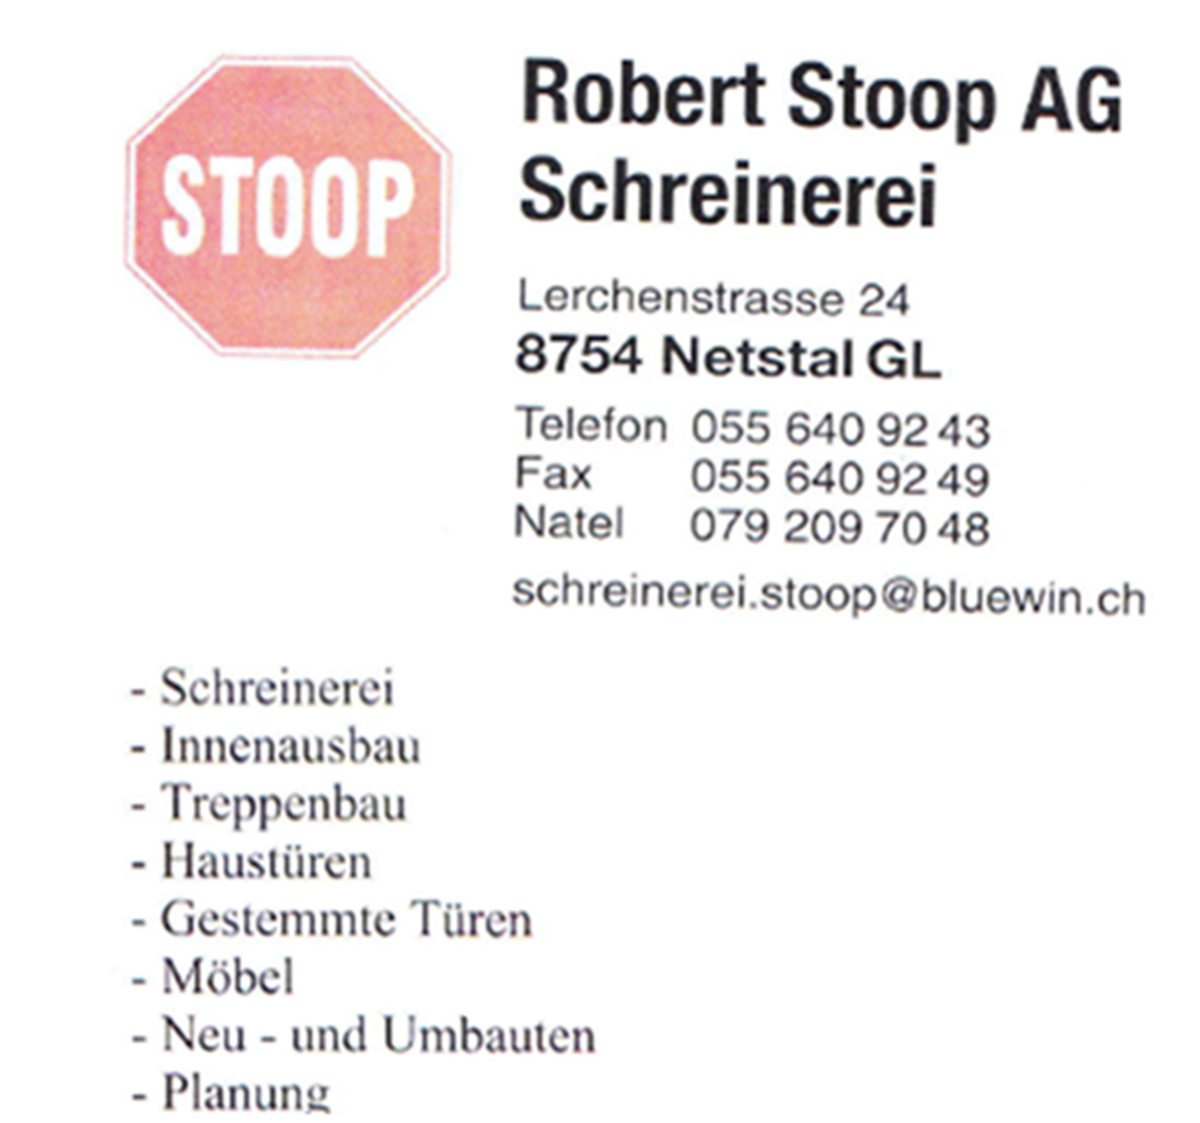 Robert Stoop AG